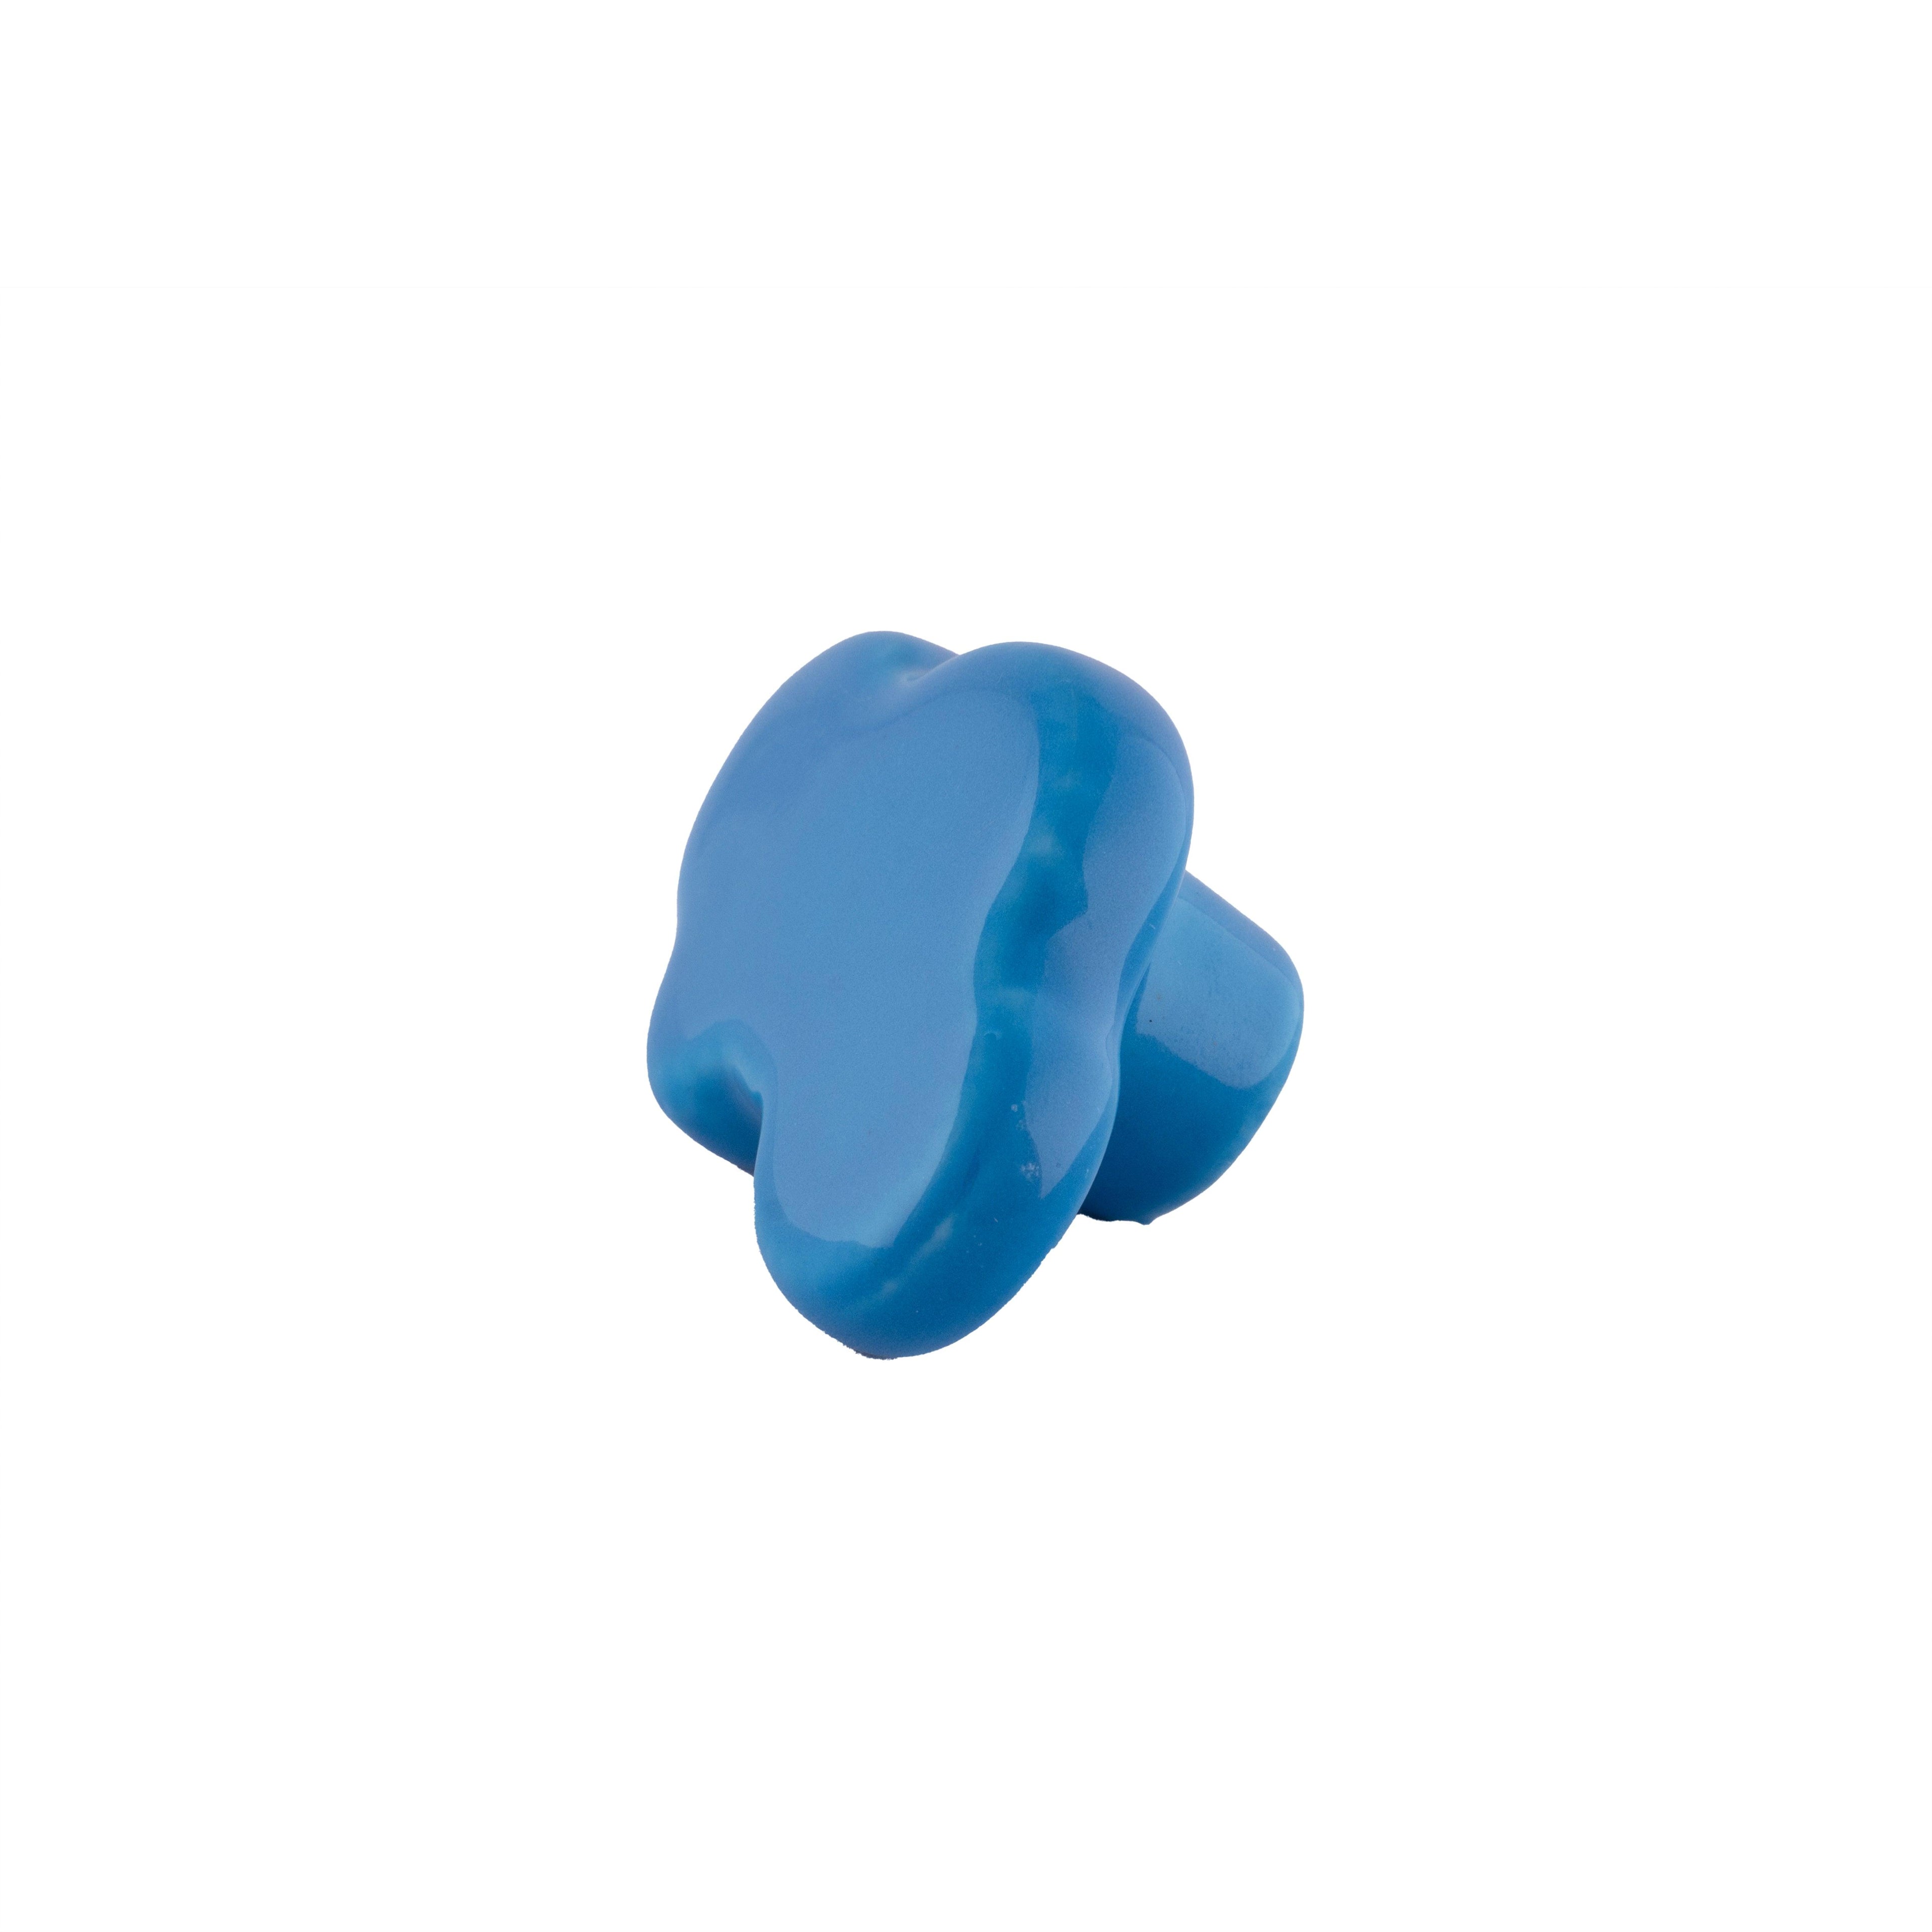 Cloud knob Knob 46mm / Blue - M A N T A R A